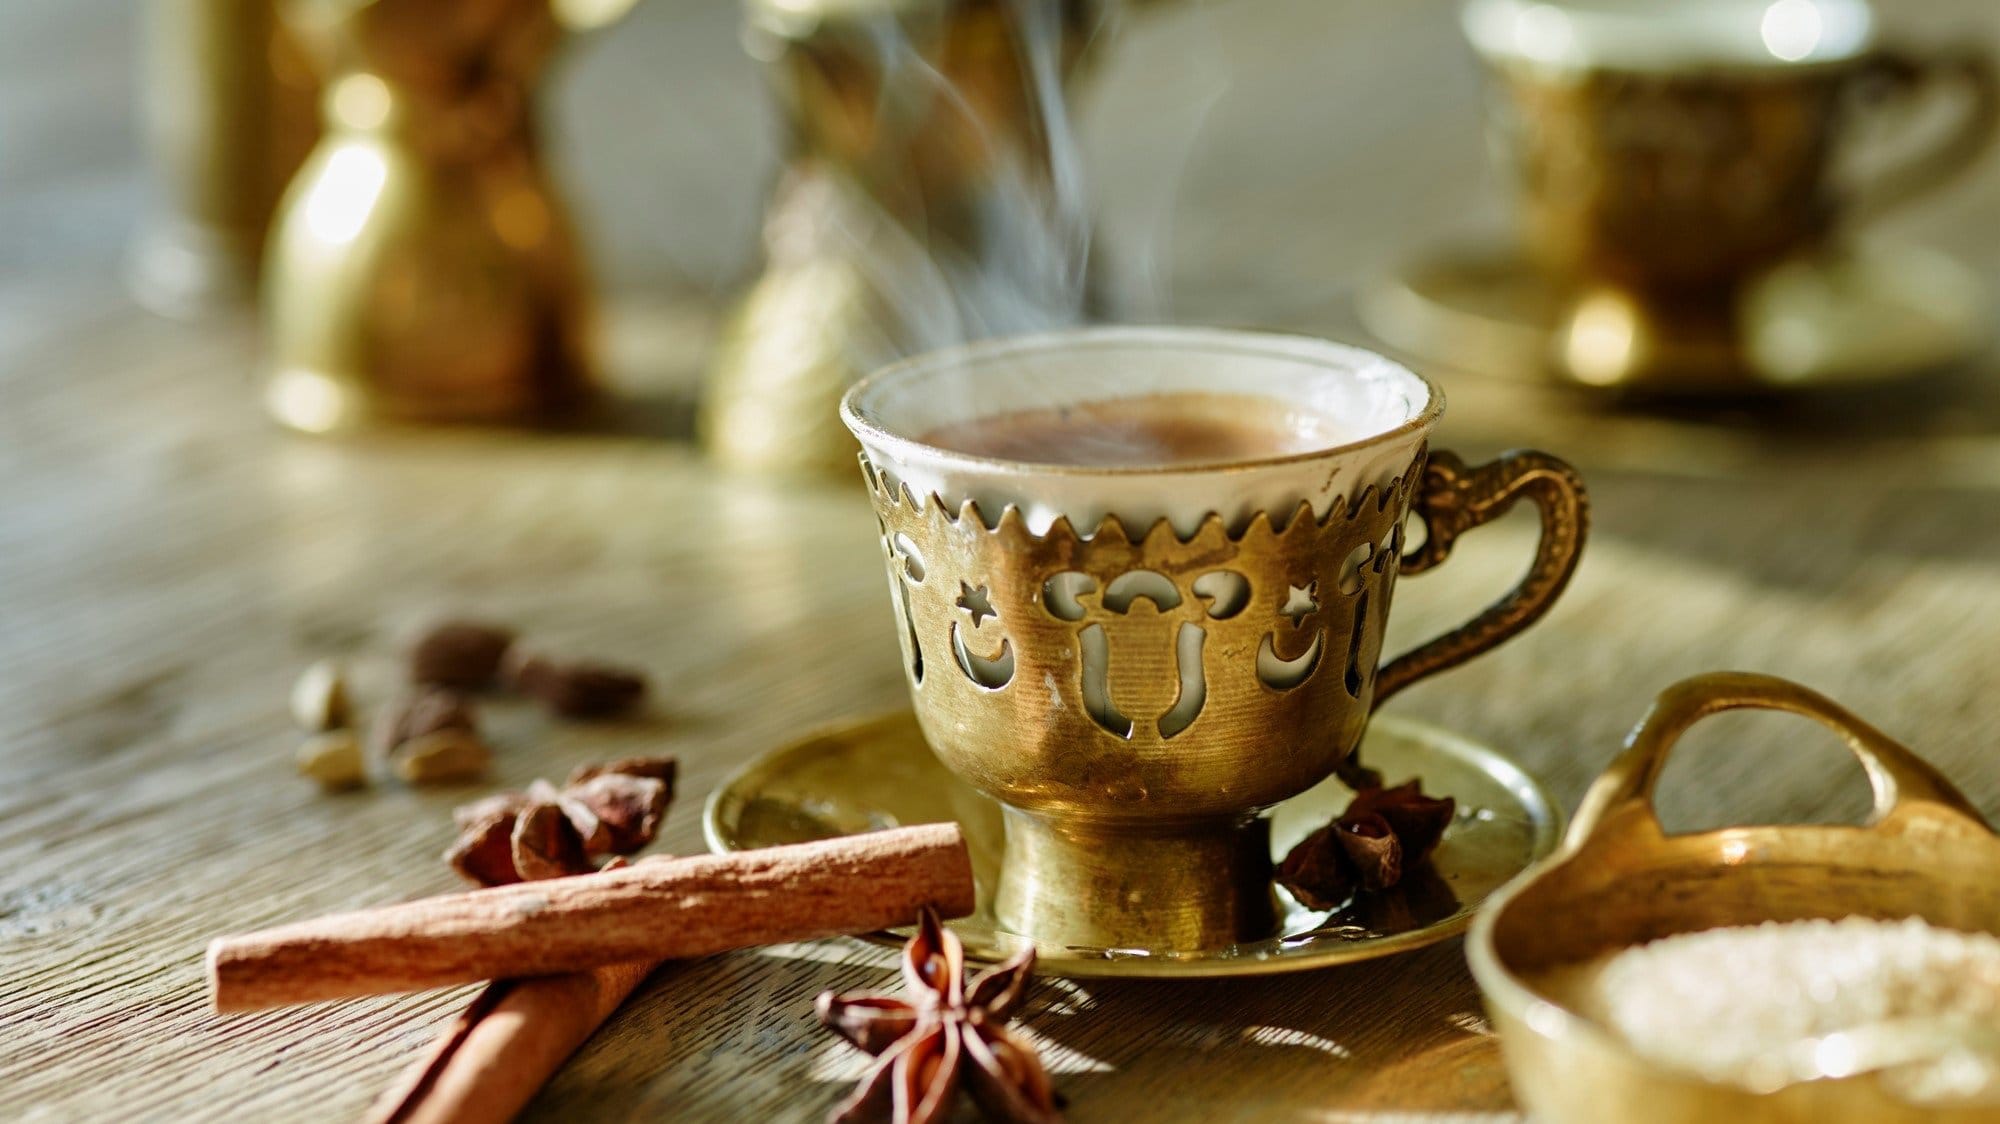 Frontalsicht: Eine arabische Mokkatasse steht auf einem Tisch. Drum herum liegen Gewürze, wie etwa eine Vanilleschote und Sternanis.